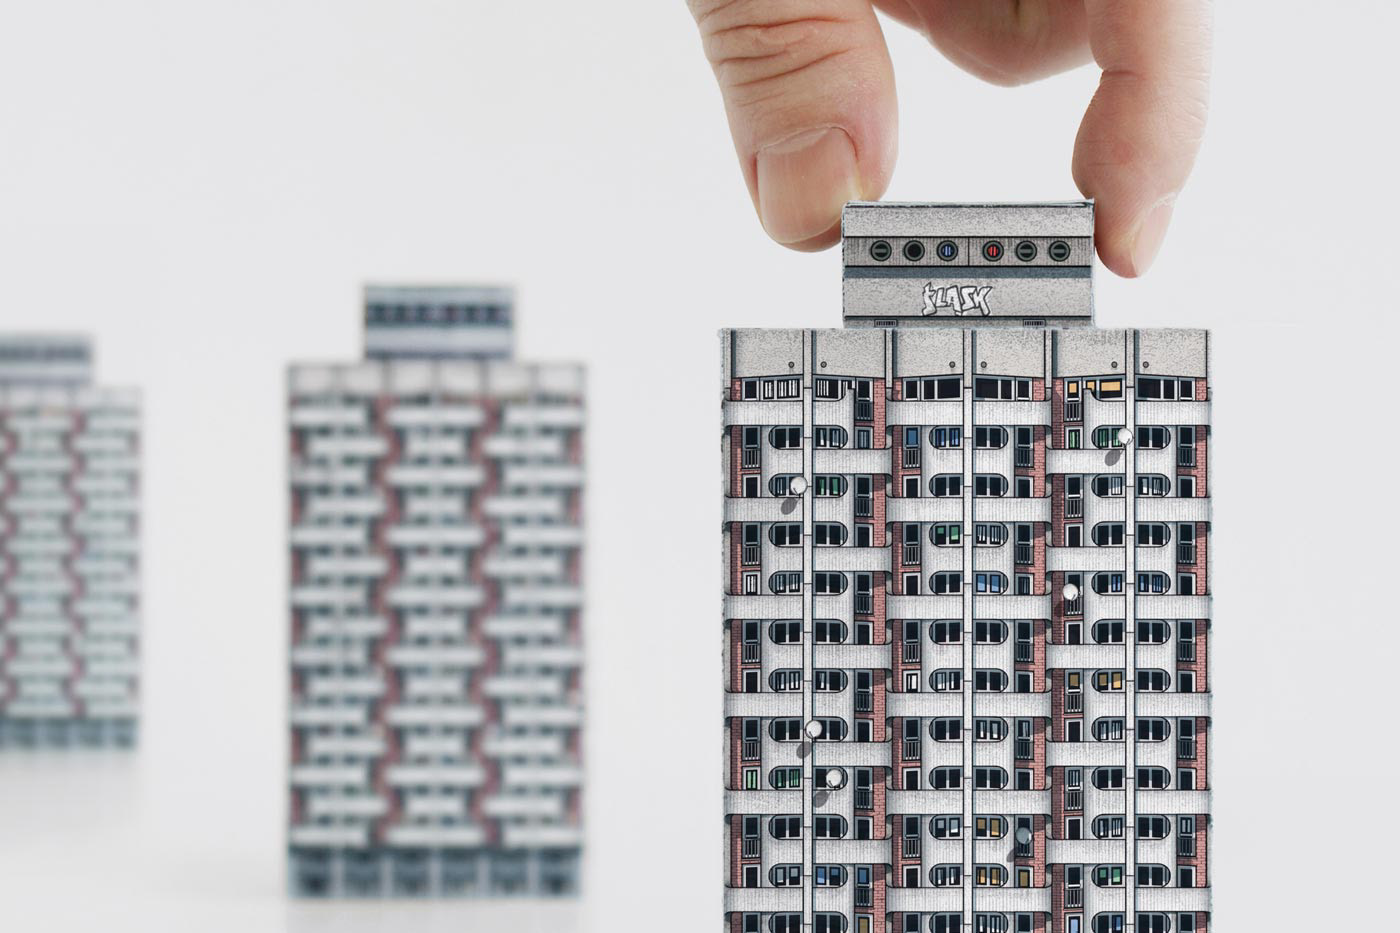 architecture Brutalism modernism poland socialist-era Paper models playful book